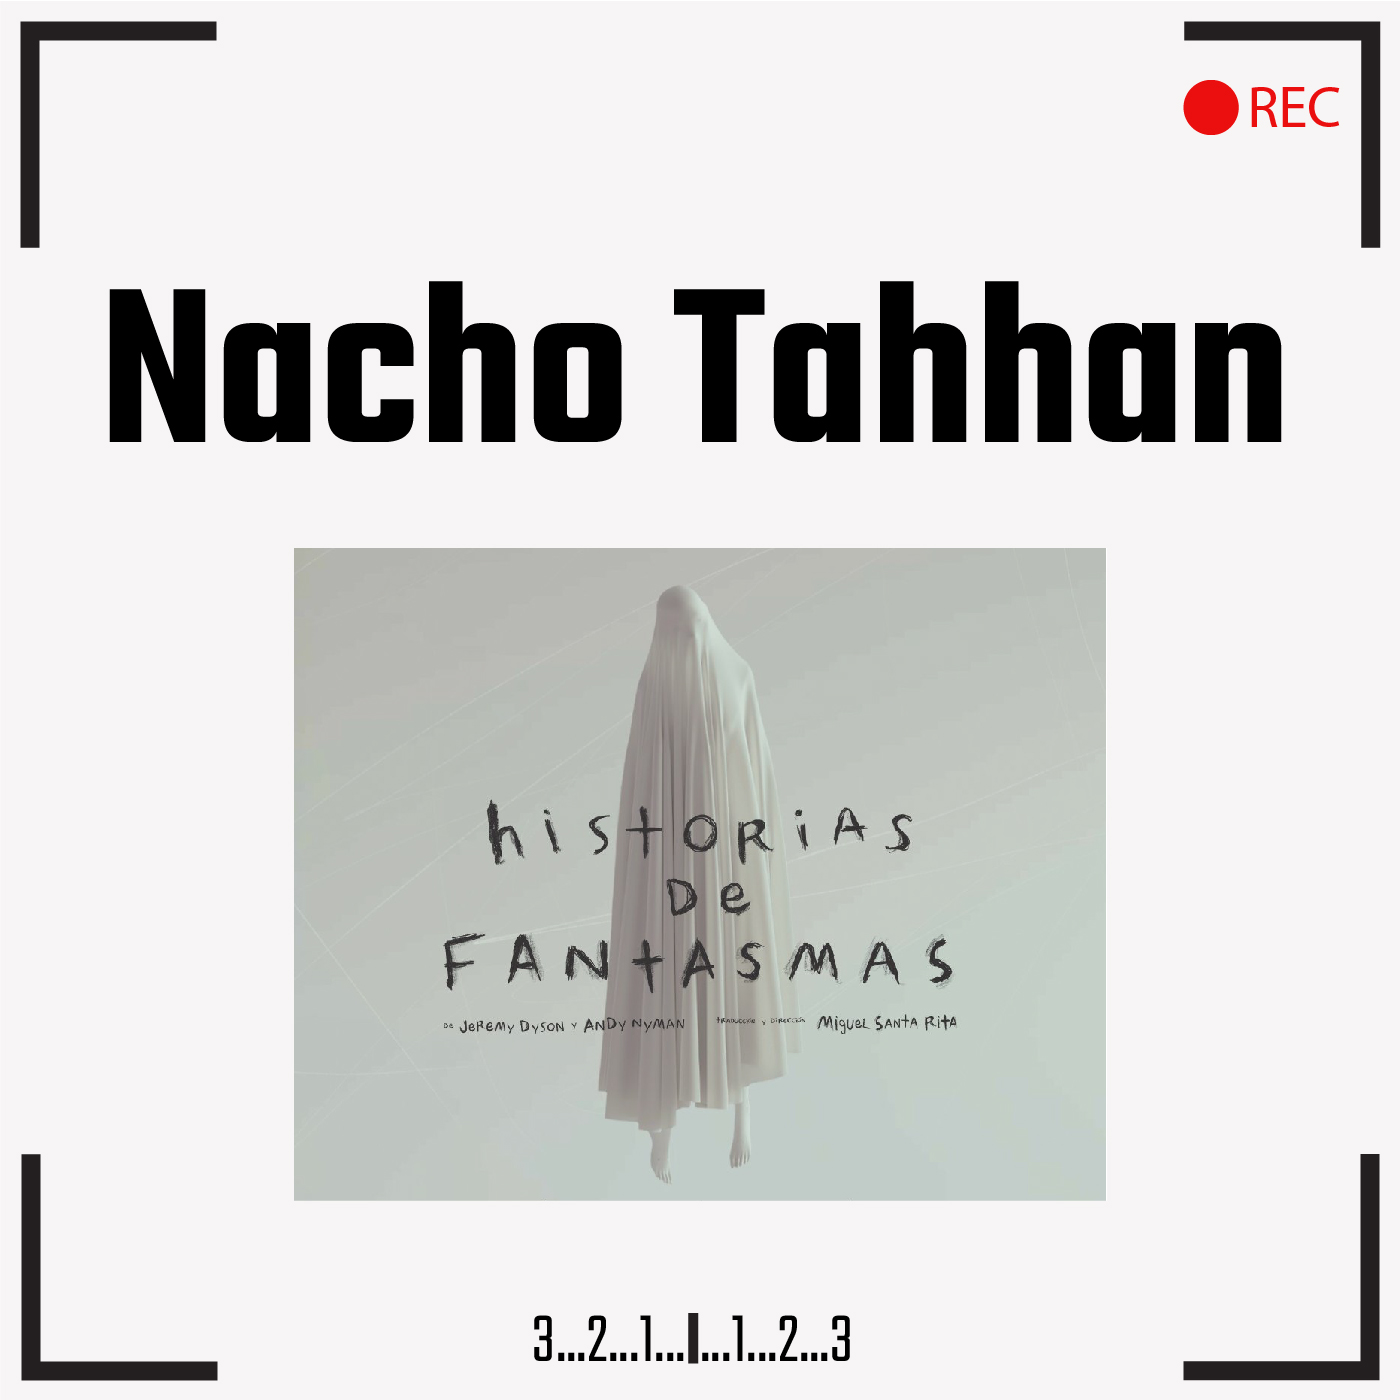 Nacho Tahhan/“Historias de fantasmas”